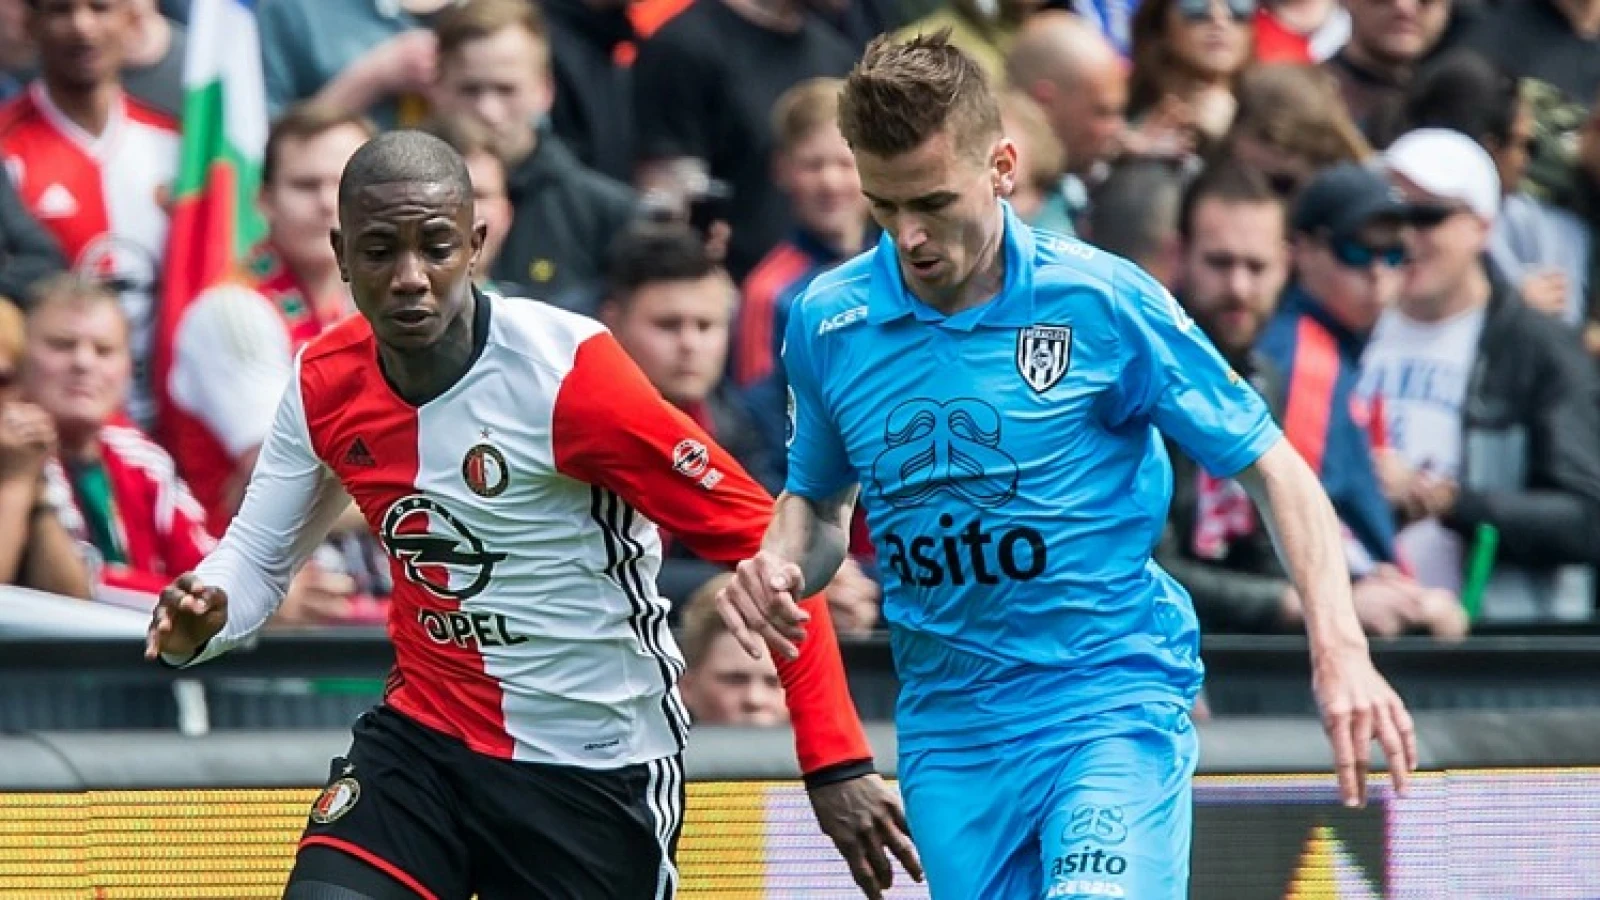 Elia vertrekt bij Feyenoord